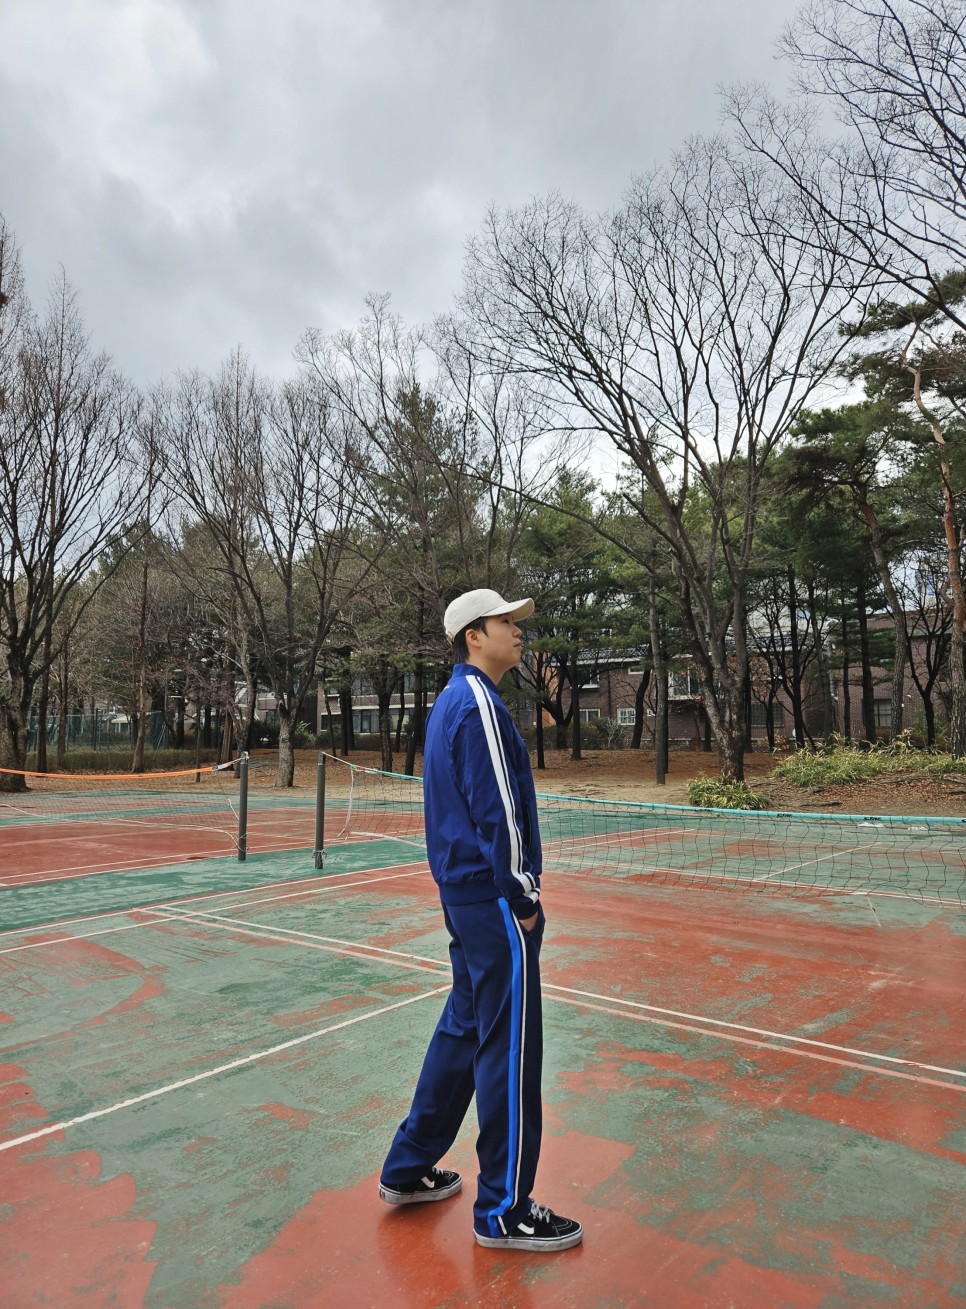 남자 트레이닝 세트 세르지오 타키니 프리미엄 테니스 웨어 남성 테니스 운동복 바람막이 찾는다면?